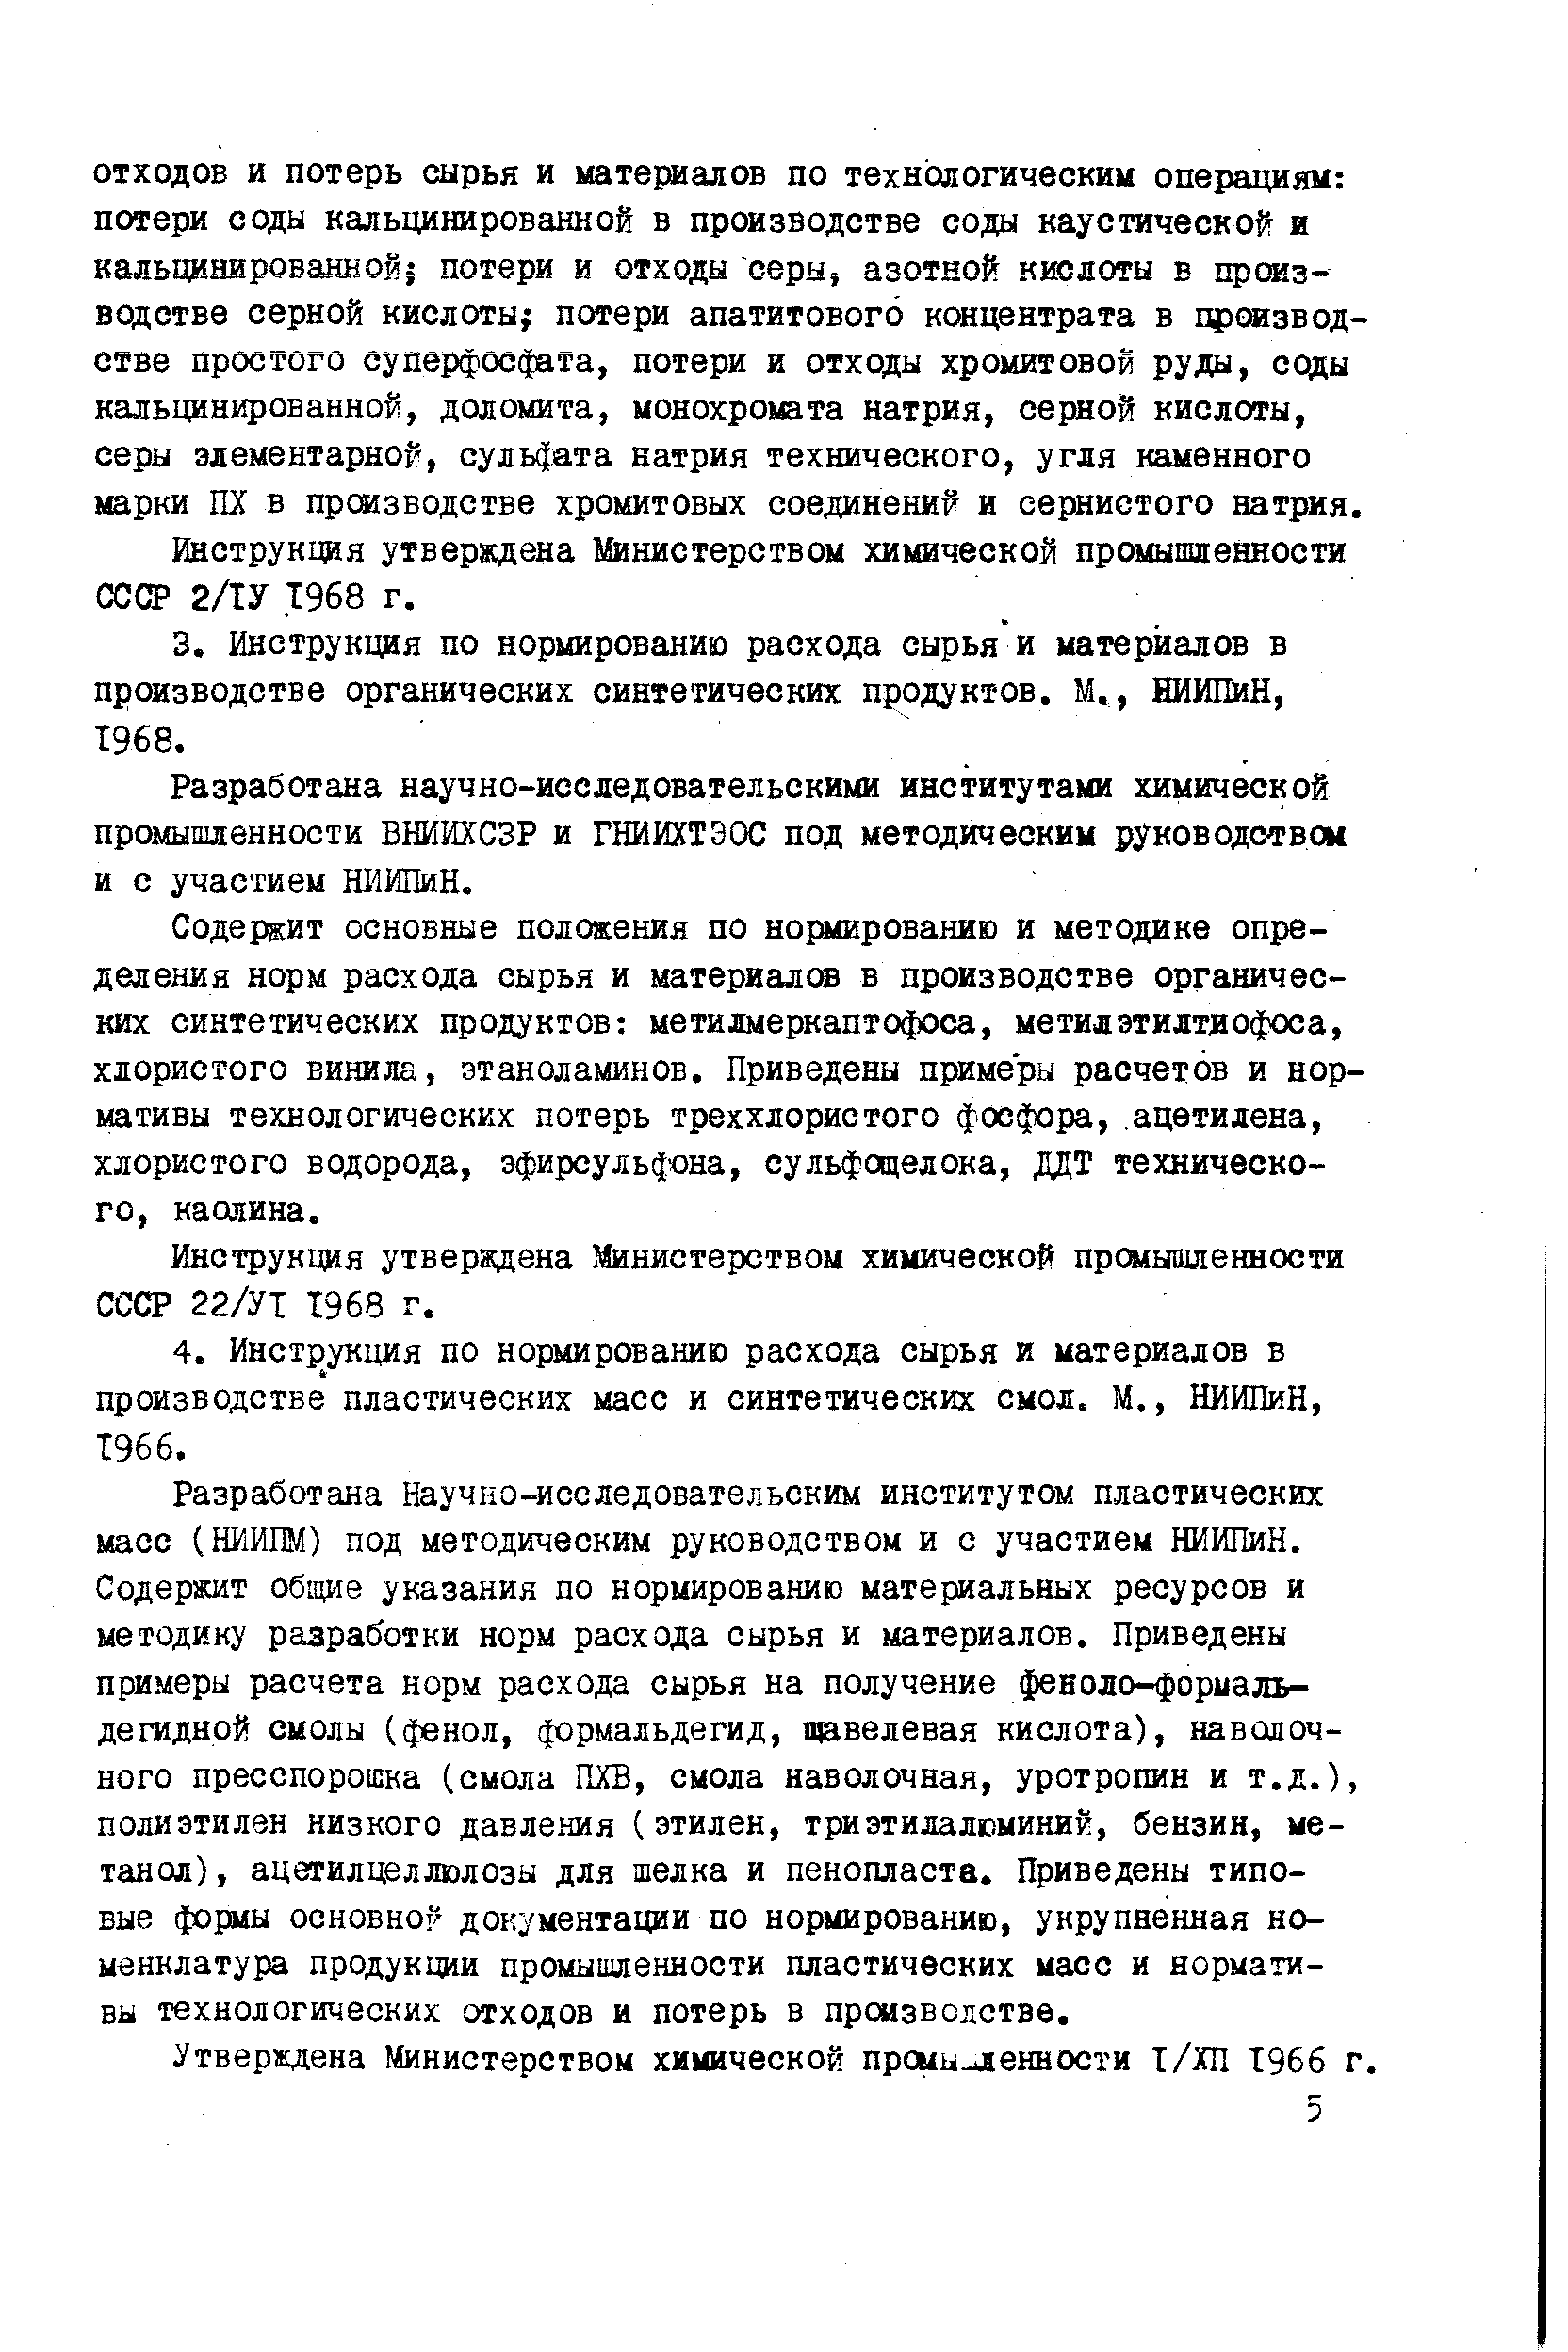 Инструкция утверждена Министерством химической промышленности СССР 22/УТ 1968 г.